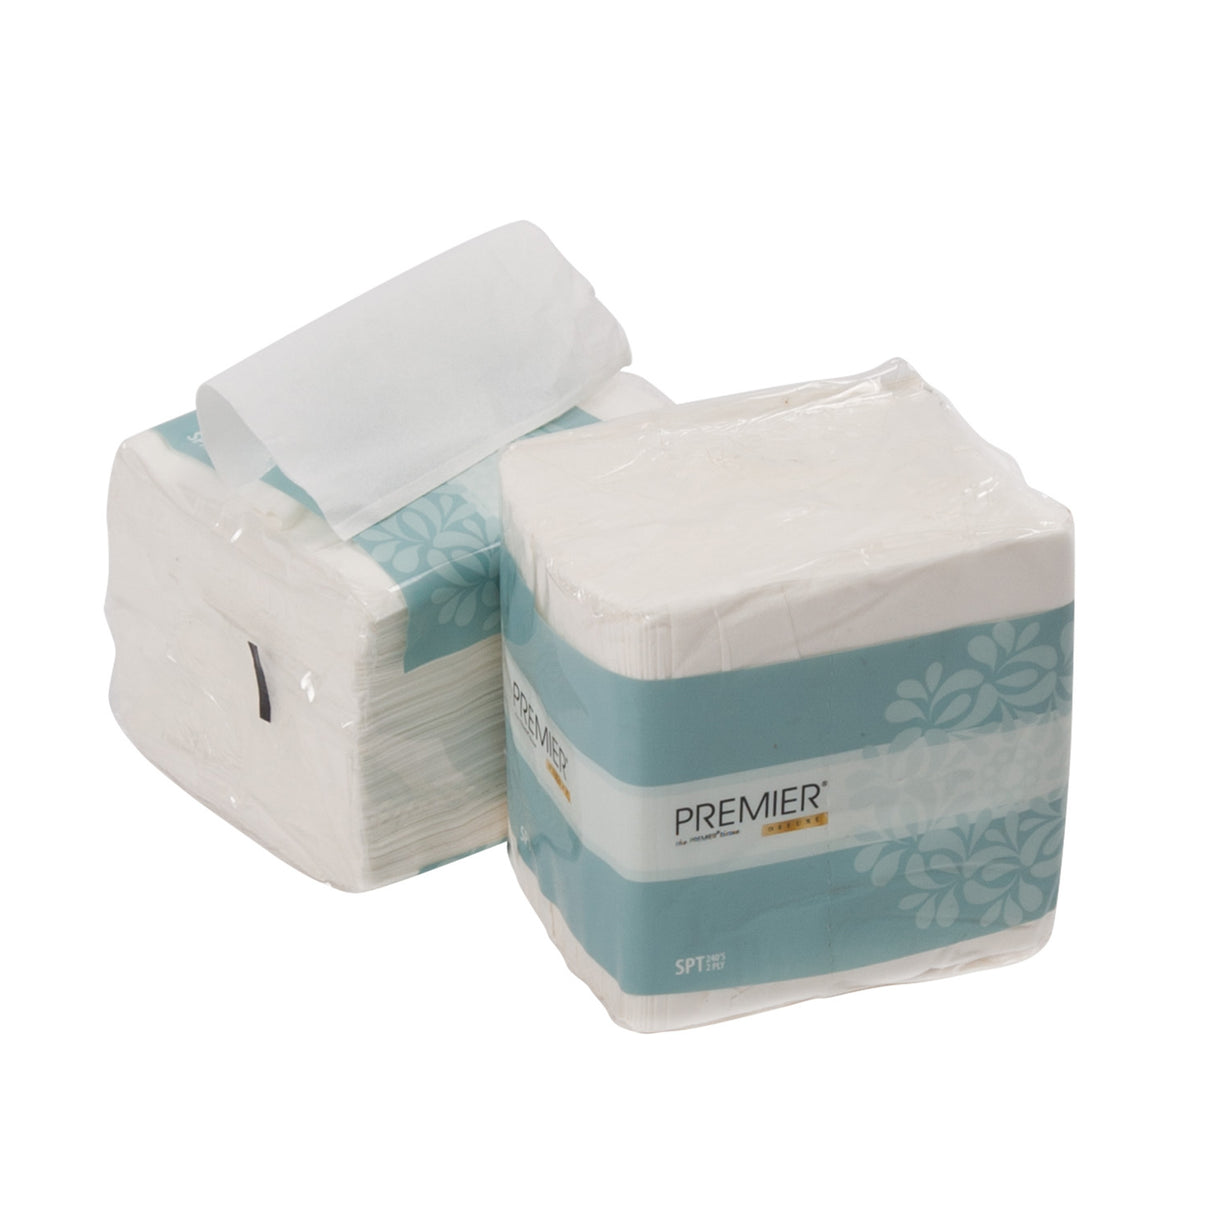 NuPaper® Interleave Tissue 2 ply Pure Pulp – 18000 sheets 75 pkts per carton